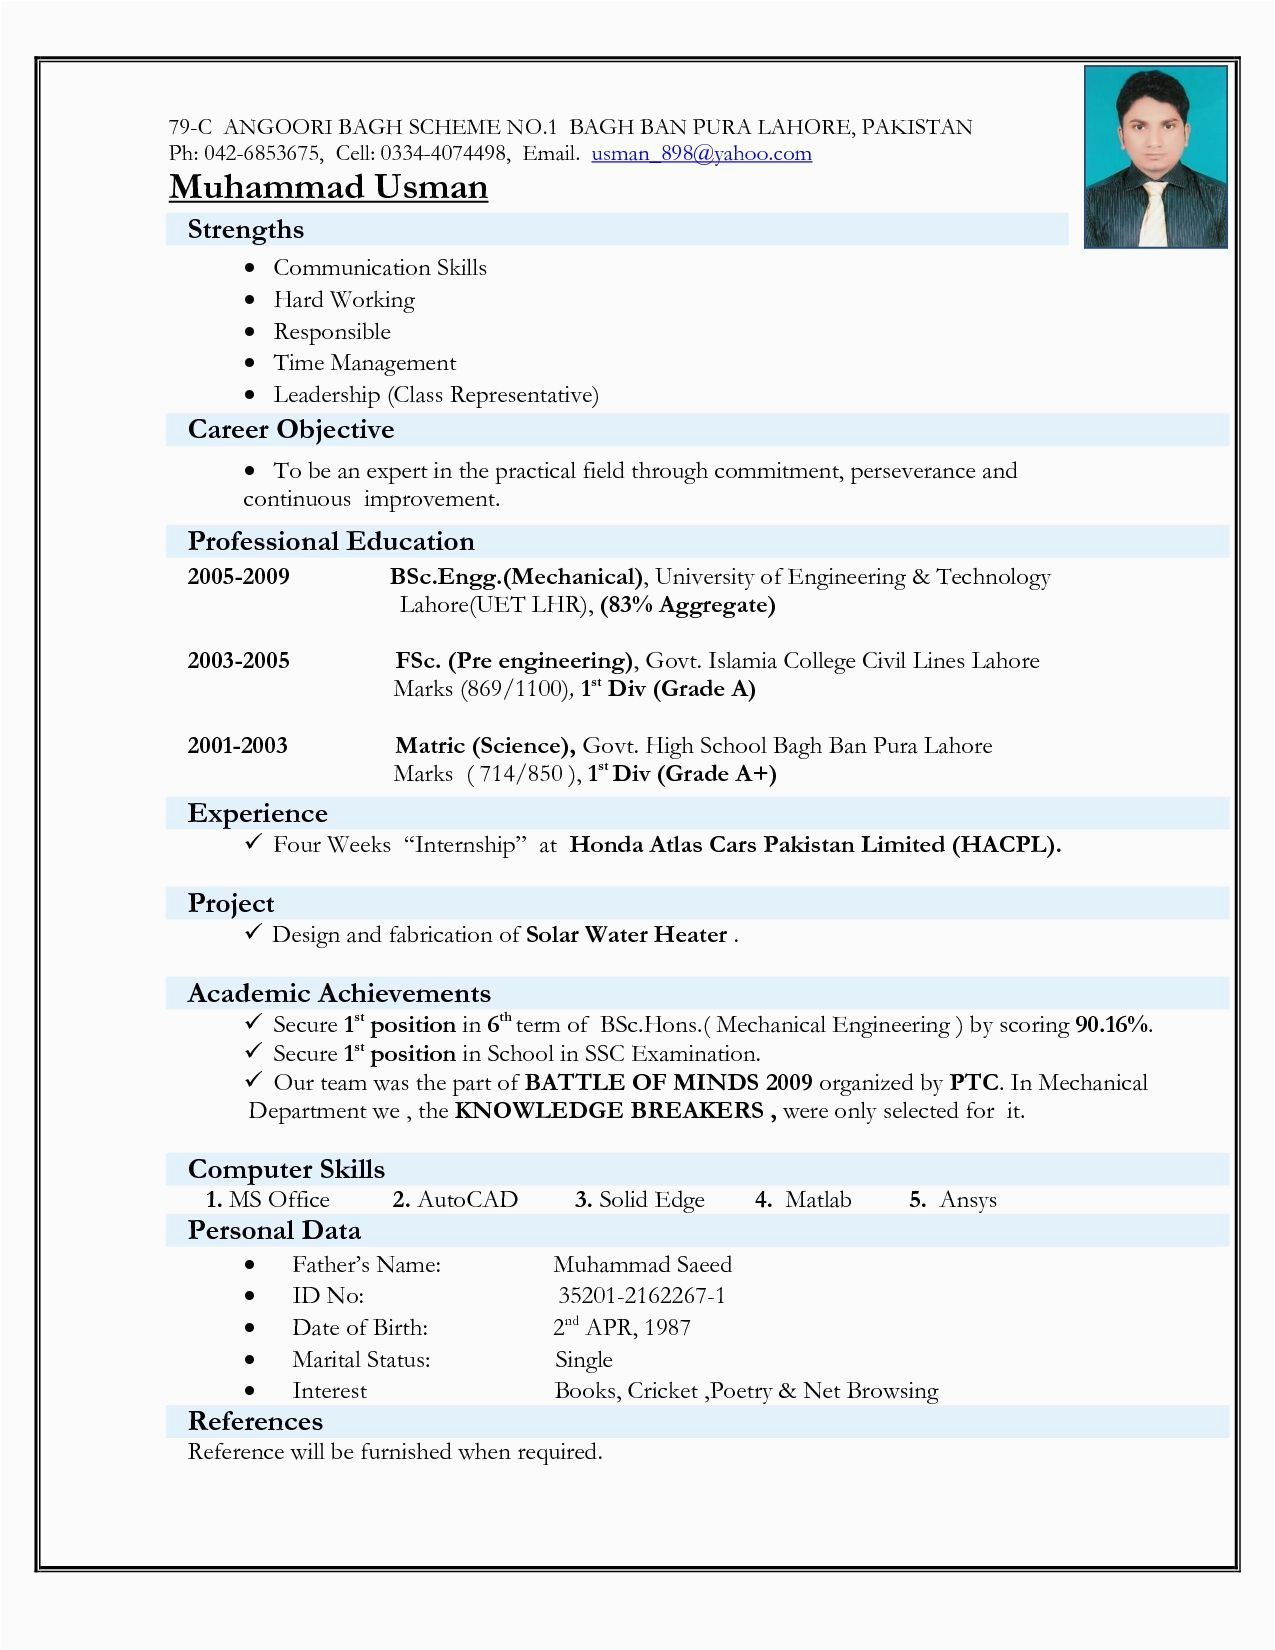 Sample Resume for Mechanical Engineer Fresher Pdf Best Cv format for Freshers Mechanical Engineers